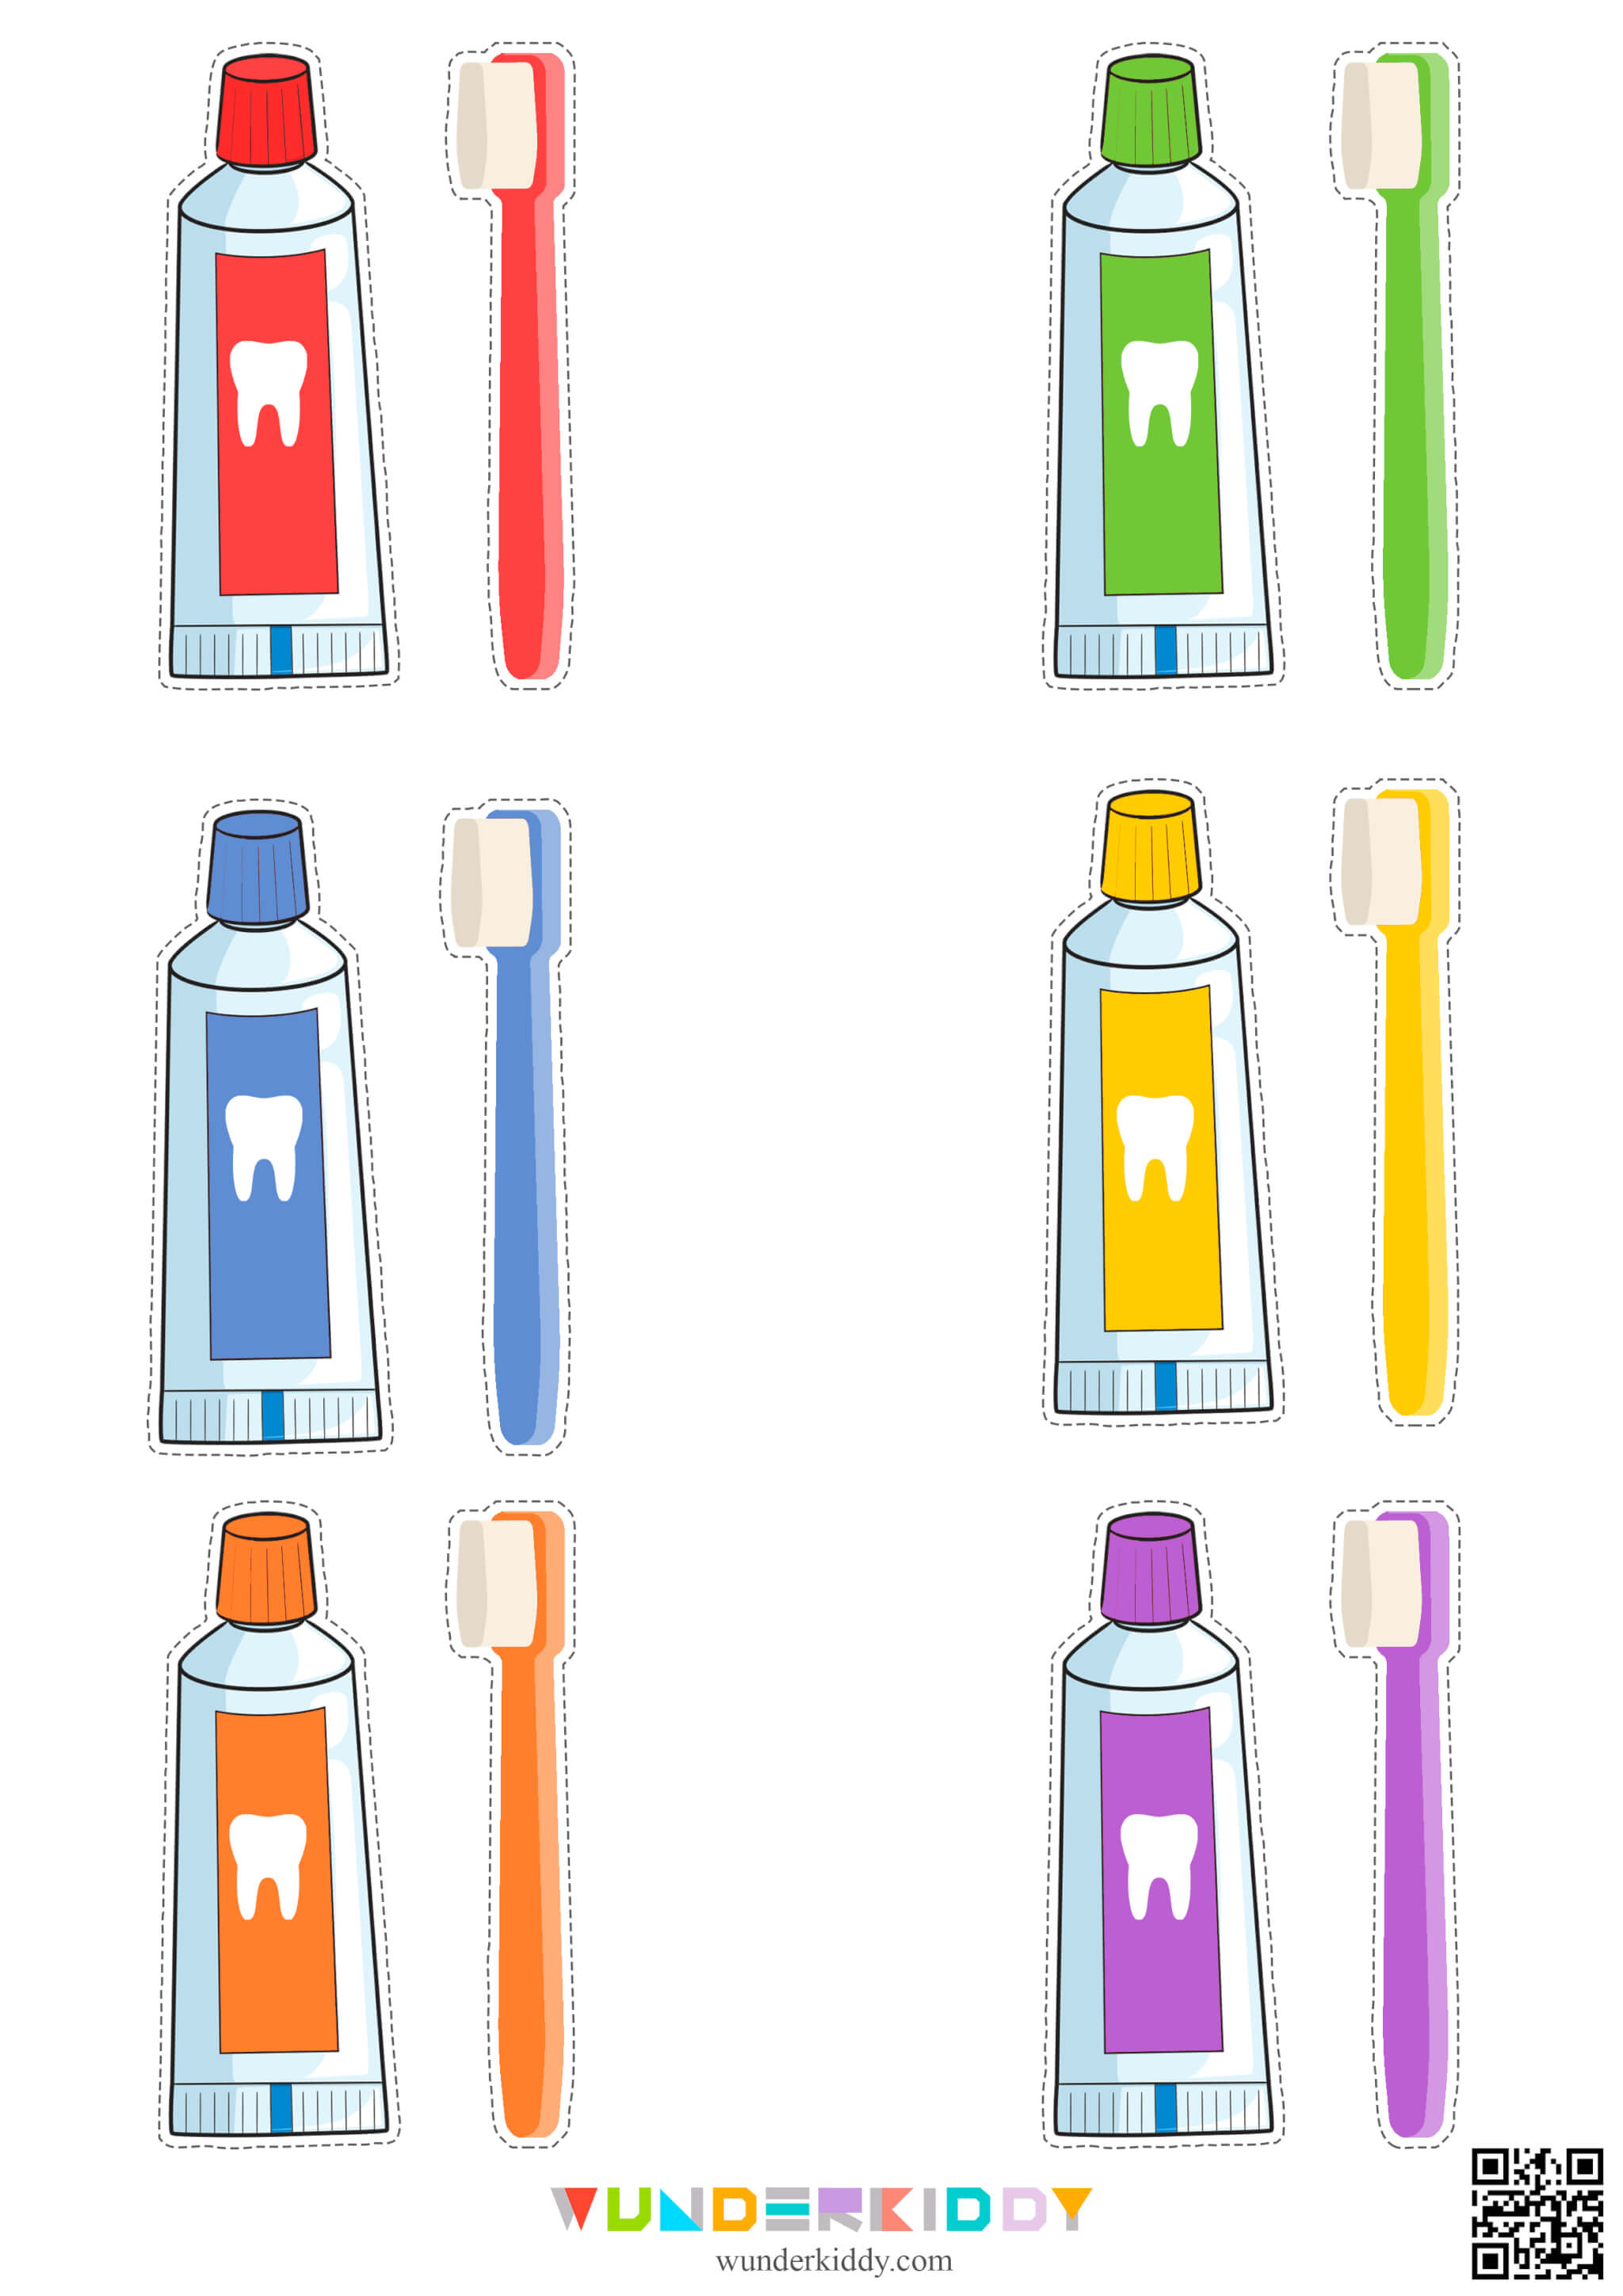 Dental Health Color Match Game - Image 3